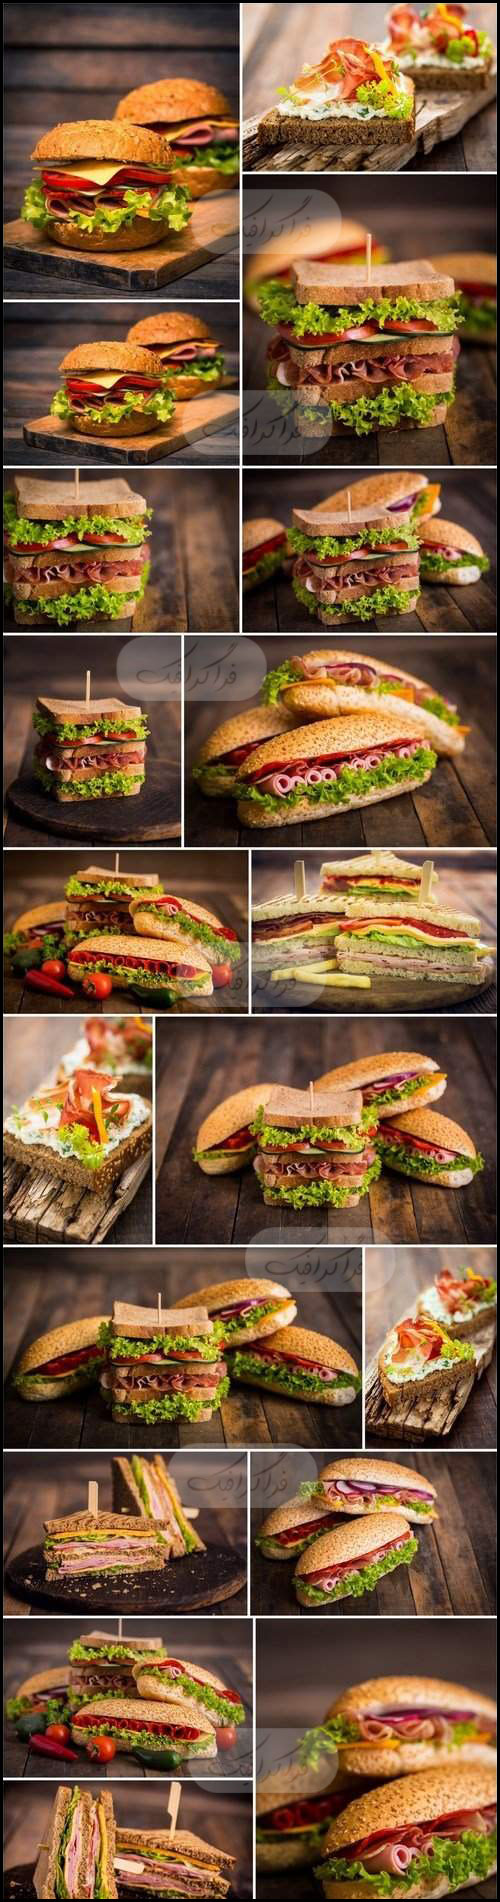 دانلود تصاویر استوک ساندویچ های خوشمزه